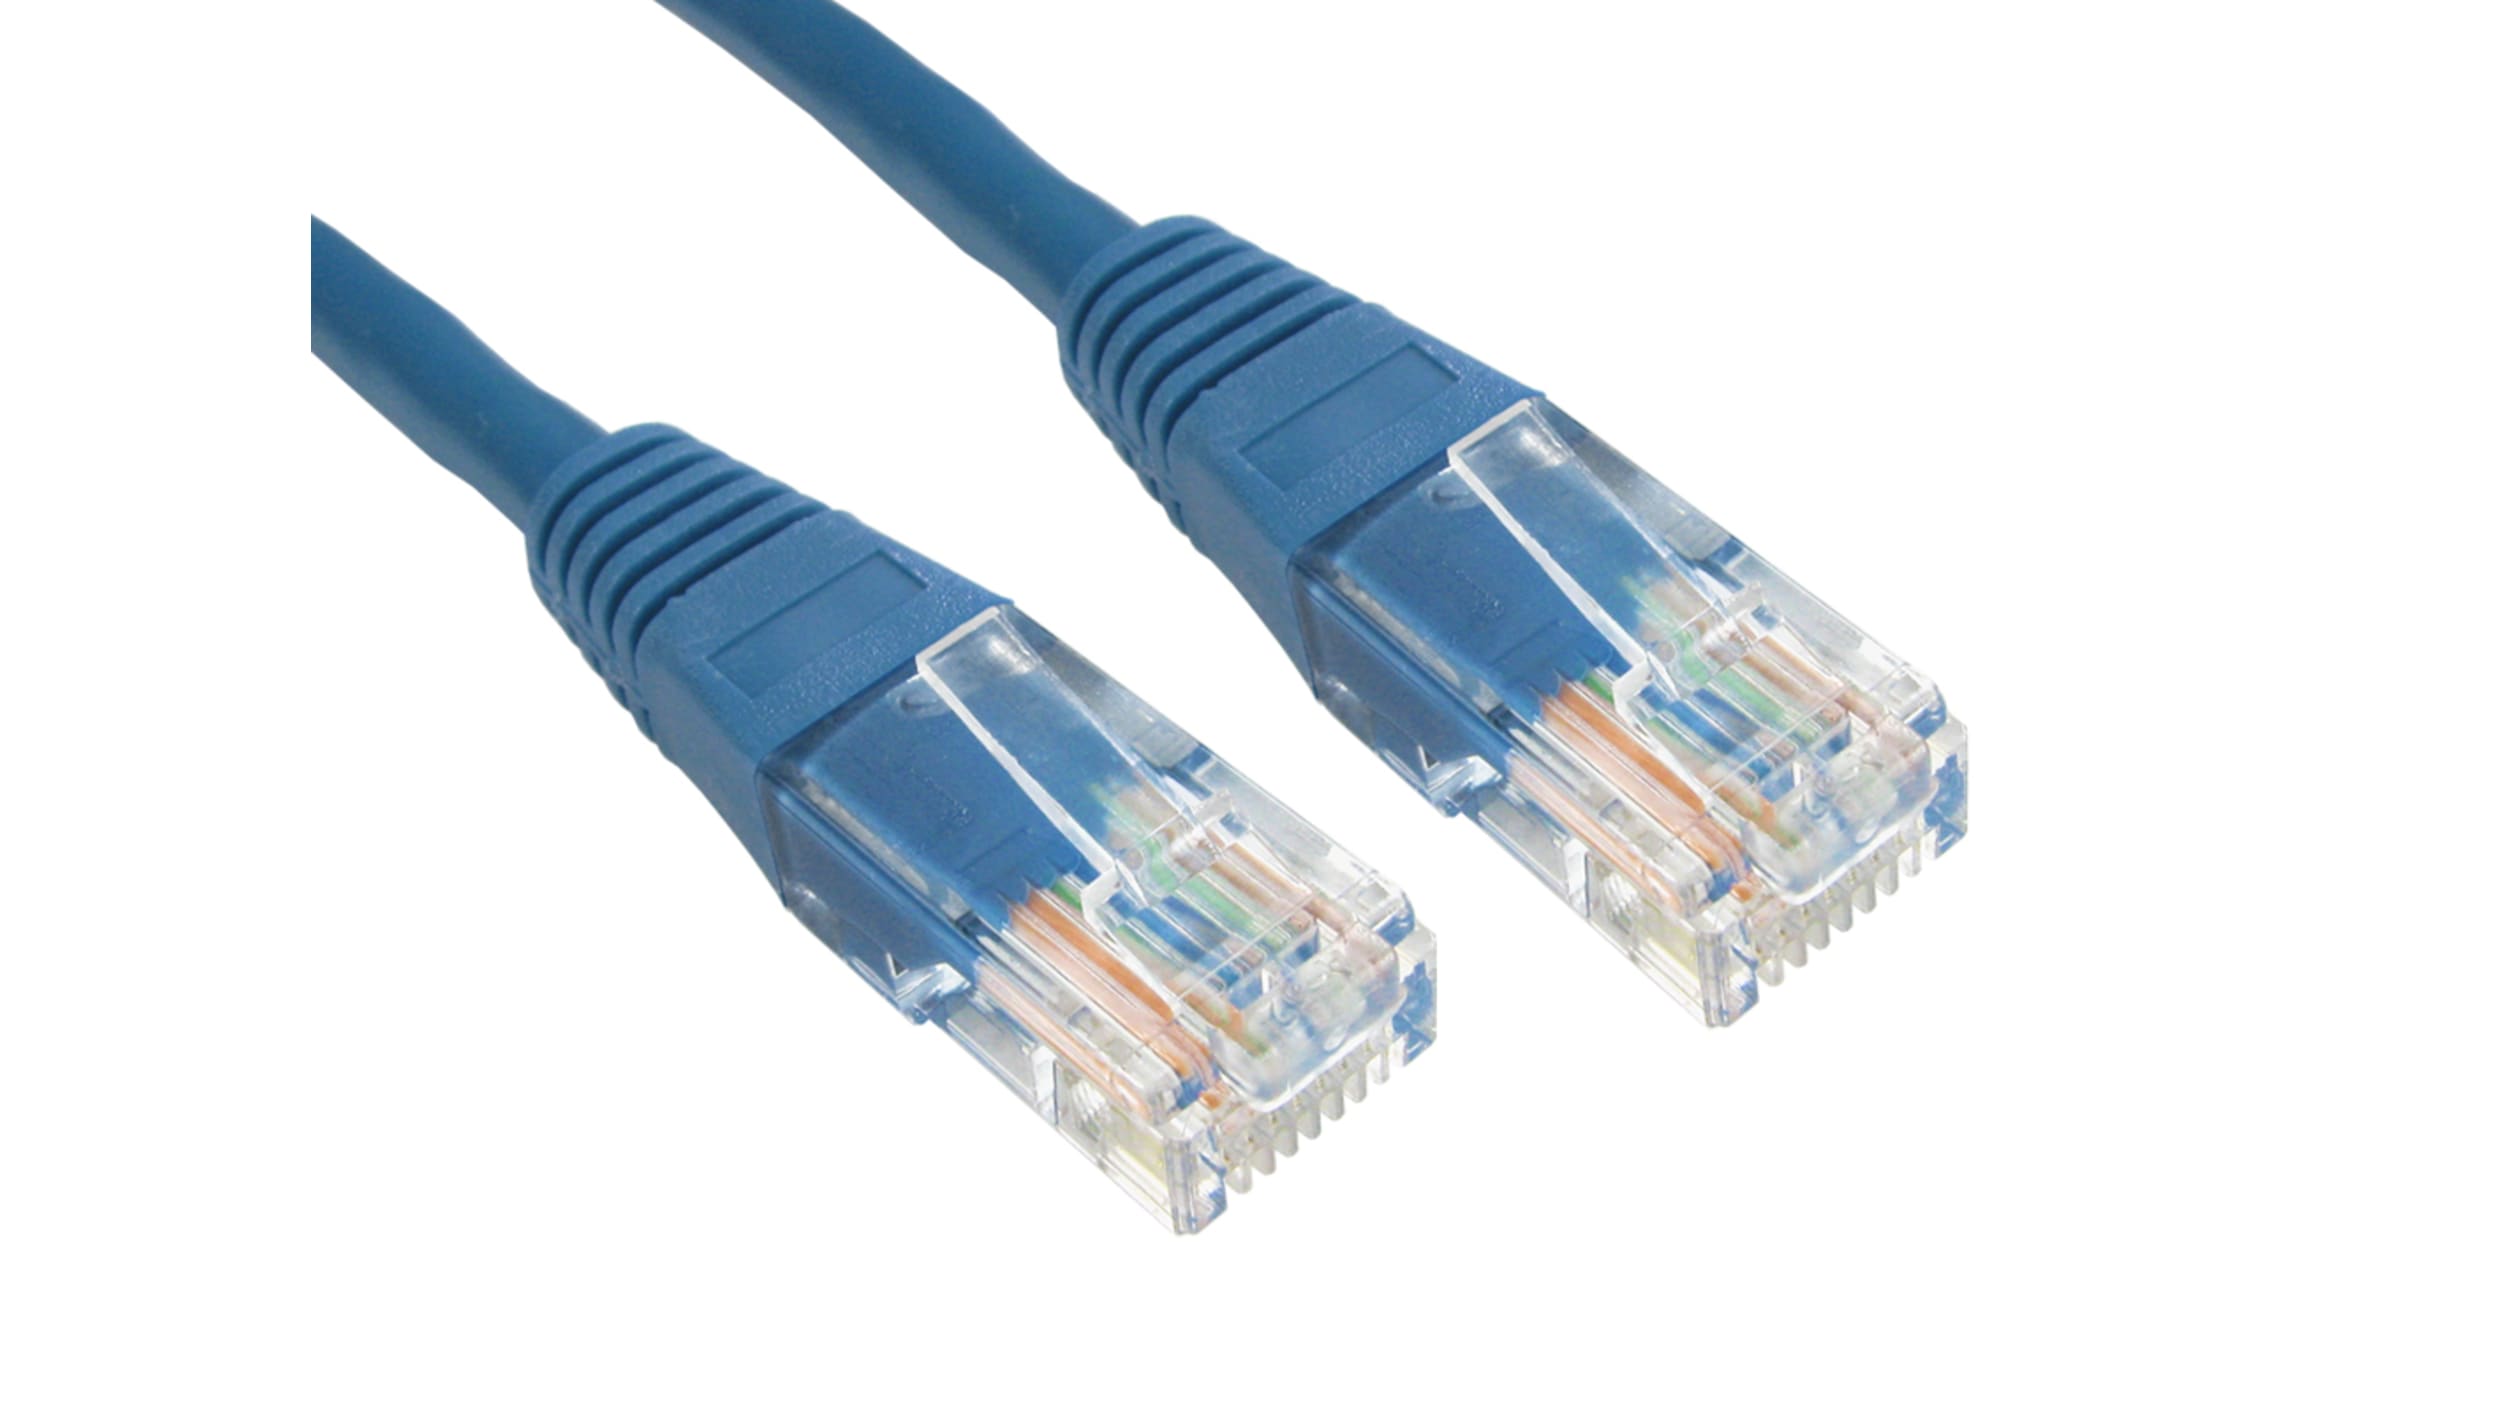 Câble Ethernet catégorie 6 S/FTP RS PRO, Bleu, 10m PVC Avec connecteur